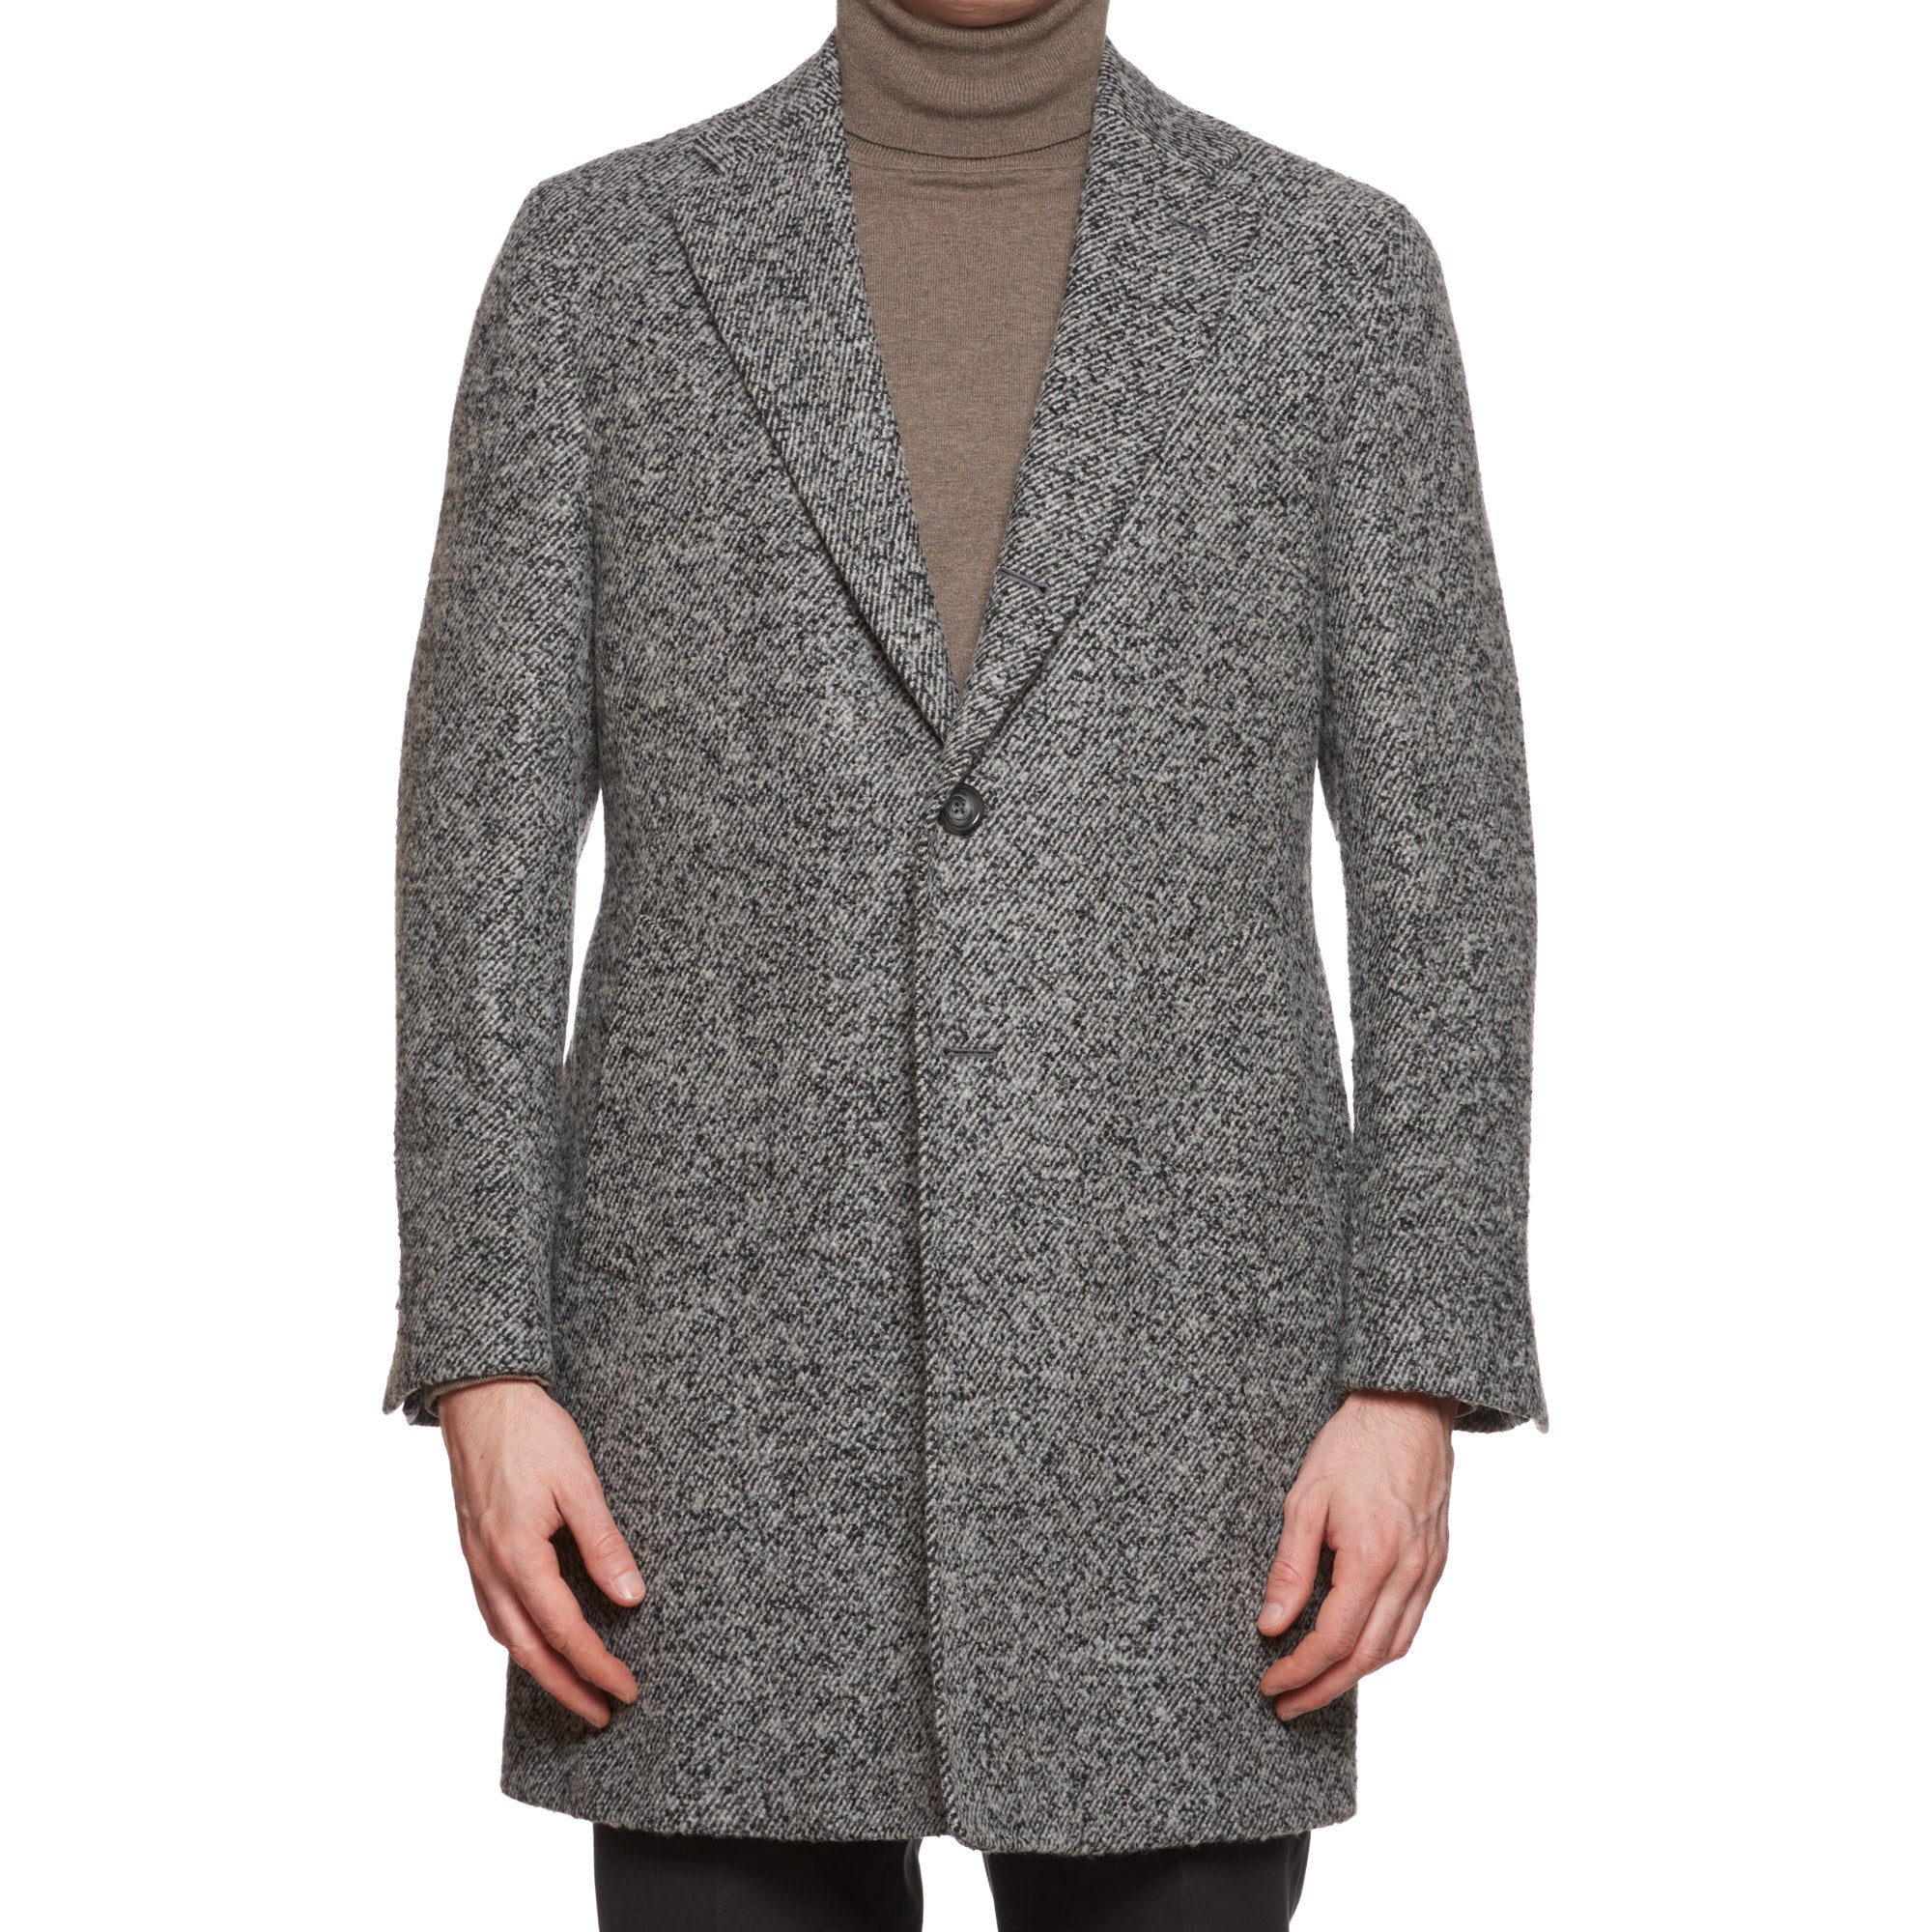 VINCENZO PALUMBO Napoli "Viky" Gray Wool Tweed Back Belted Jacket Coat NEW VINCENZO PALUMBO